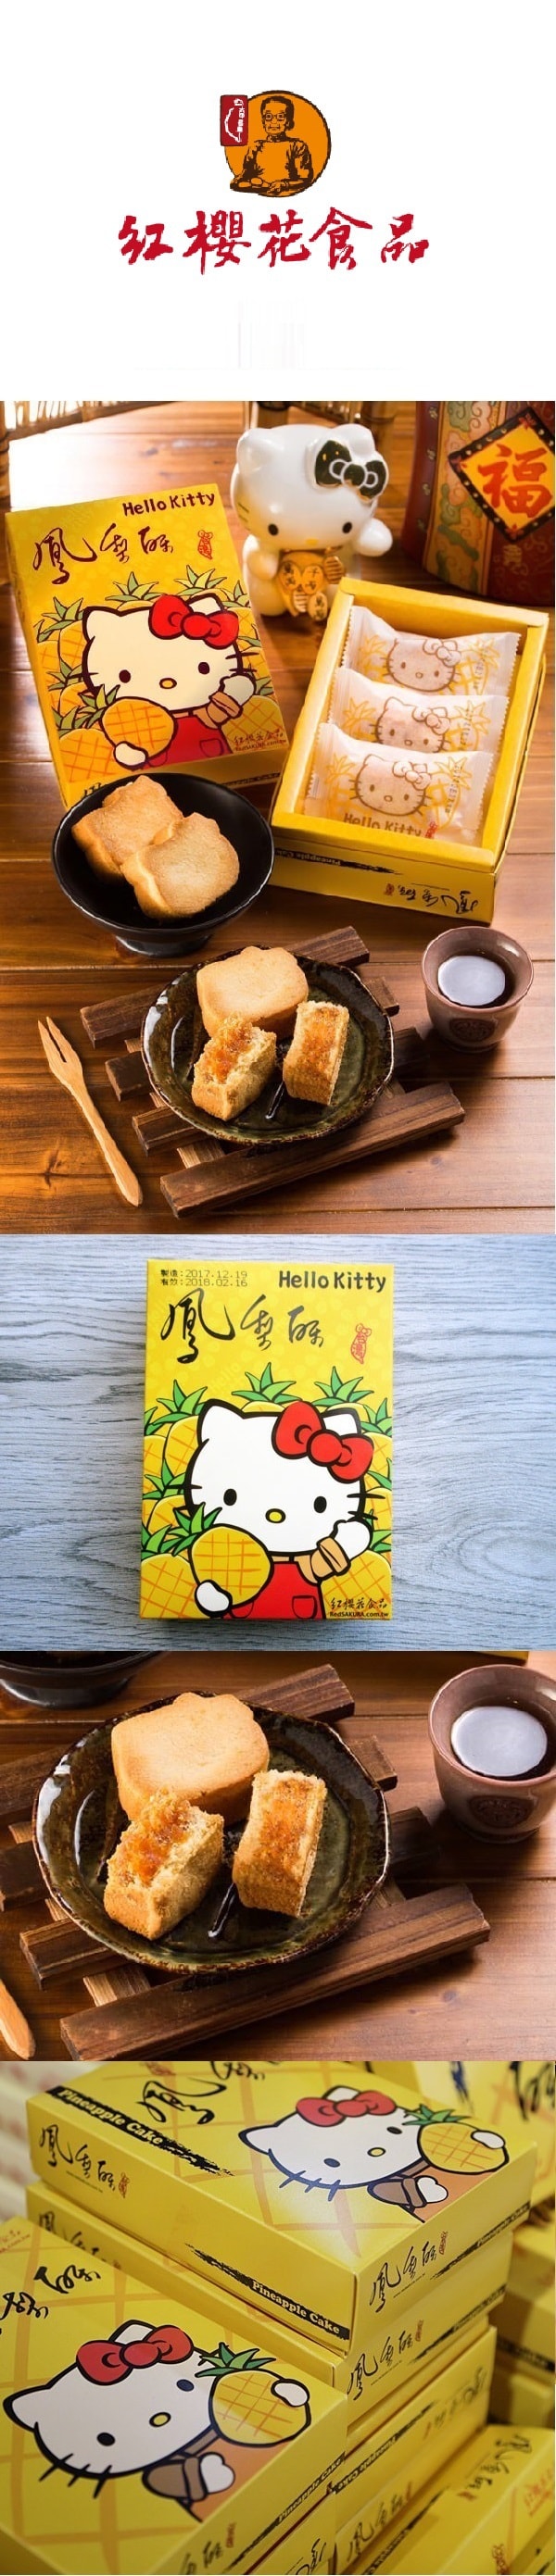 [台湾直邮] 红樱花 Hello Kitty 造型凤梨酥 150g 3入